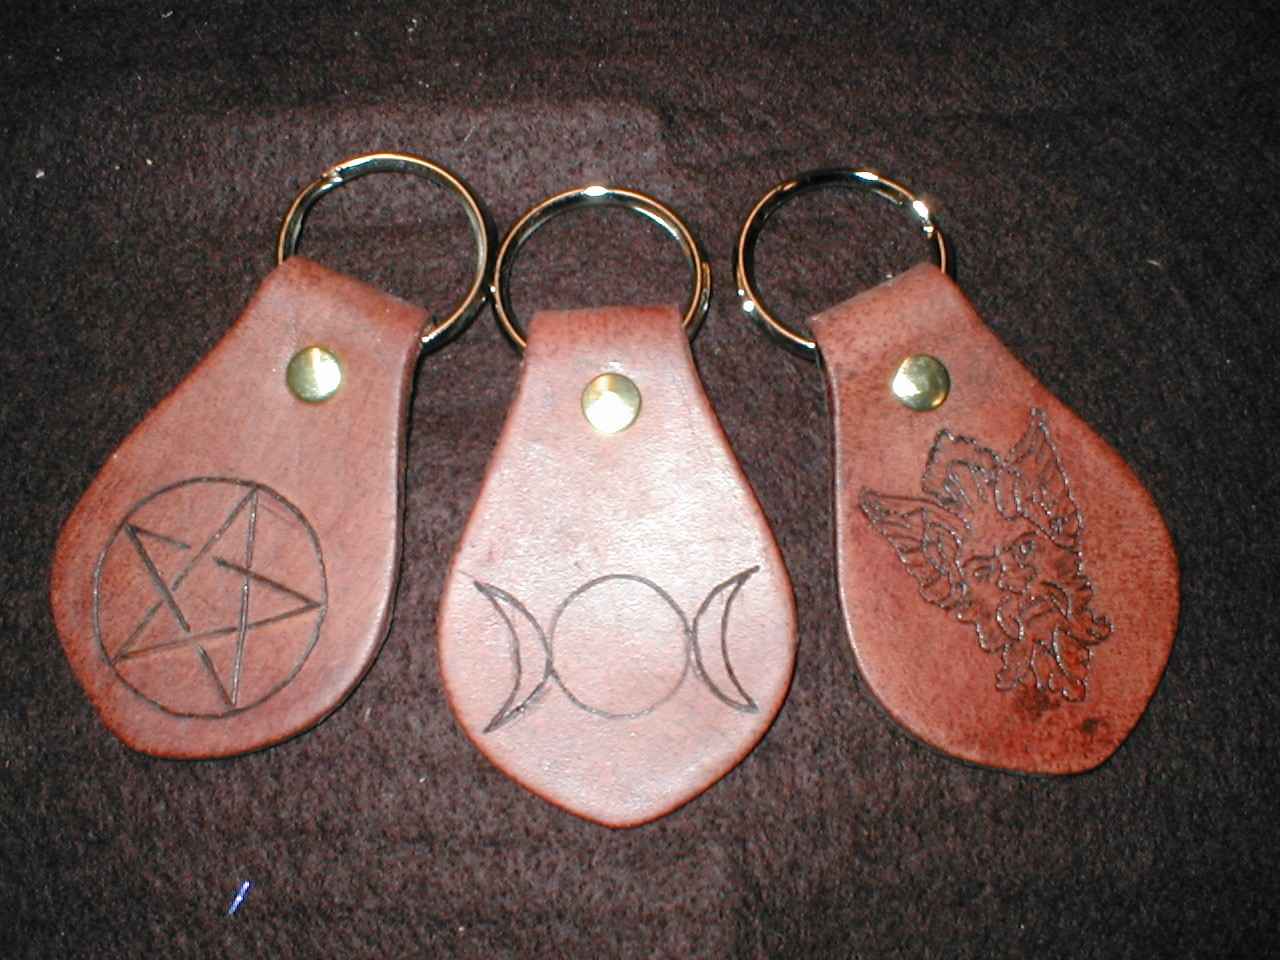 Celtic Pagan Key Chains